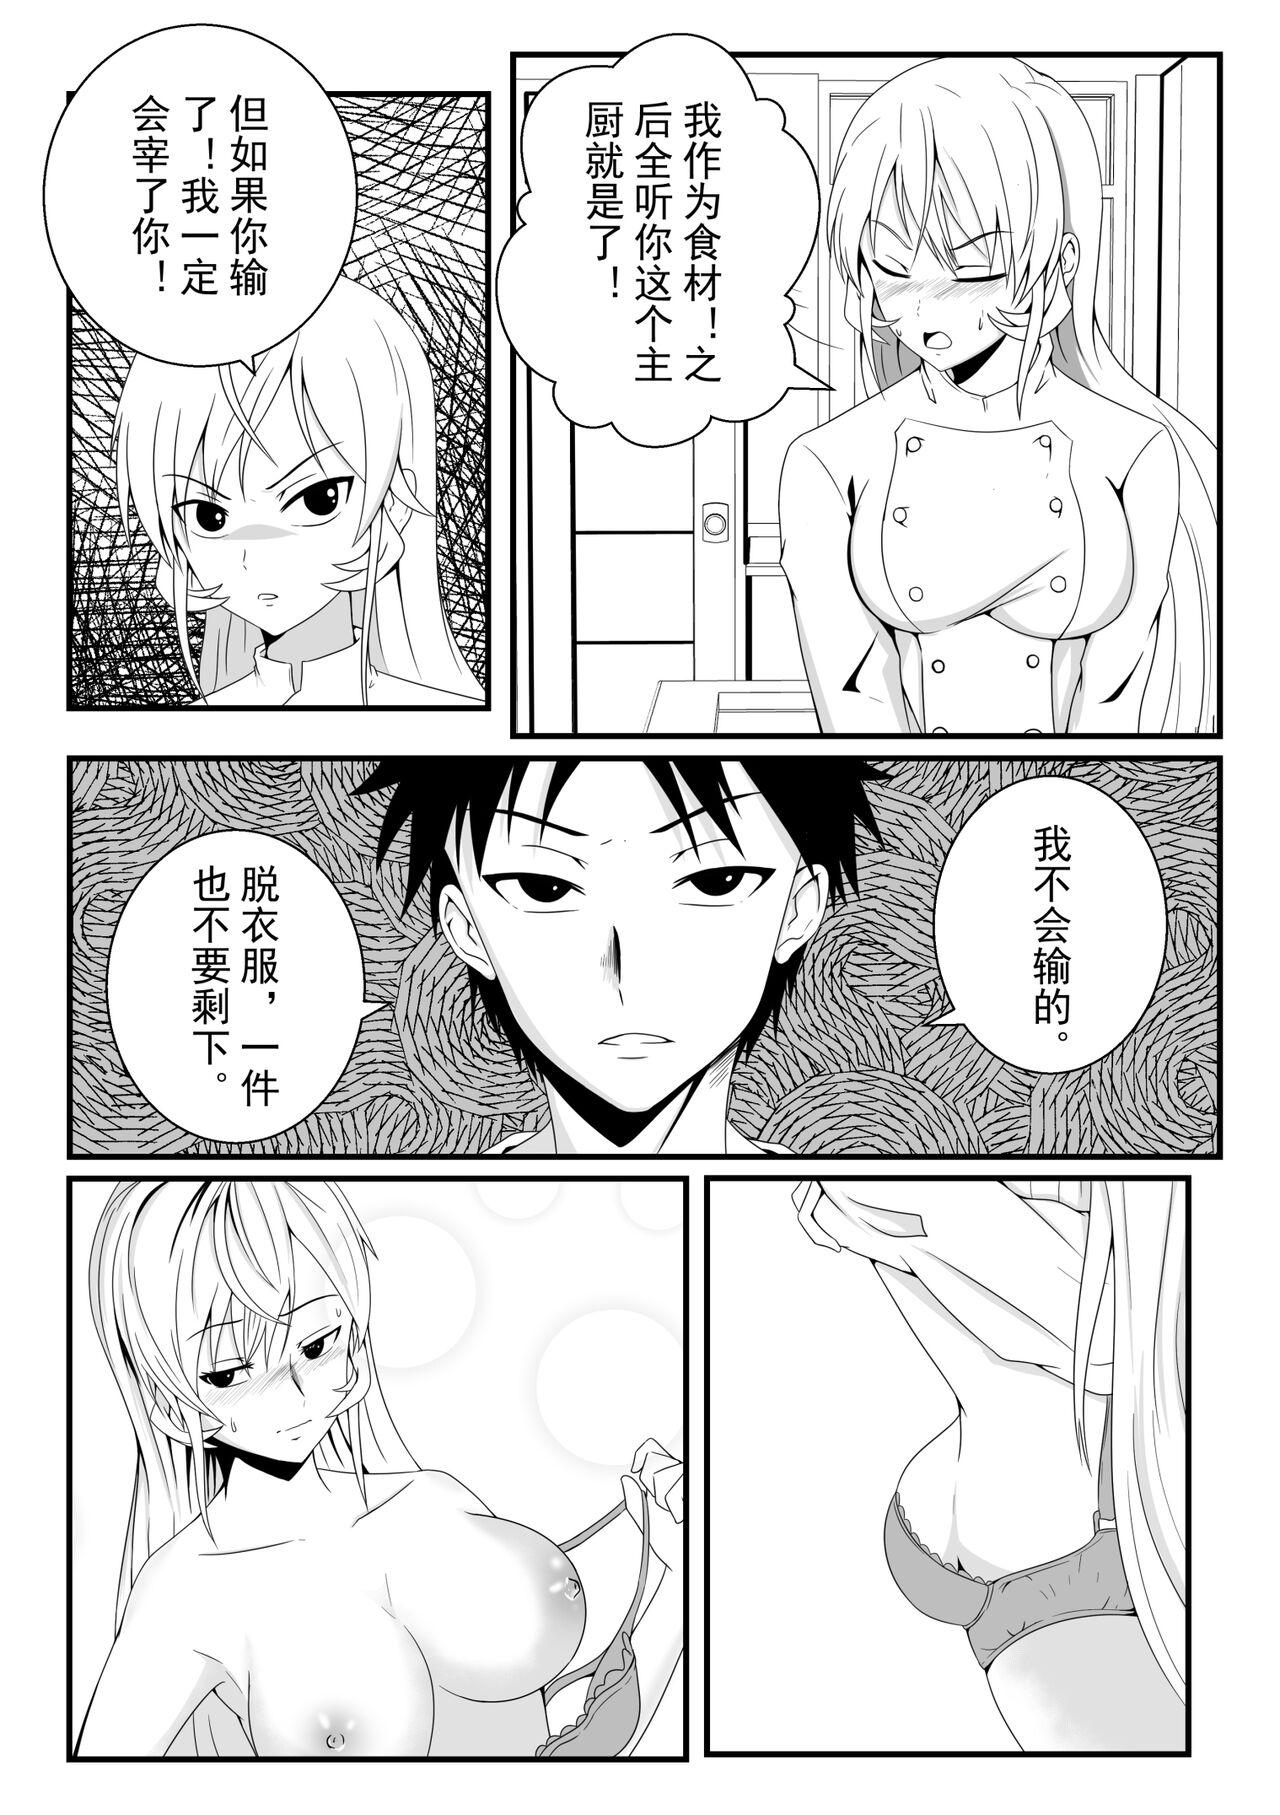 Amateursex 食戟之灵 - Shokugeki no soma Shemale - Page 8